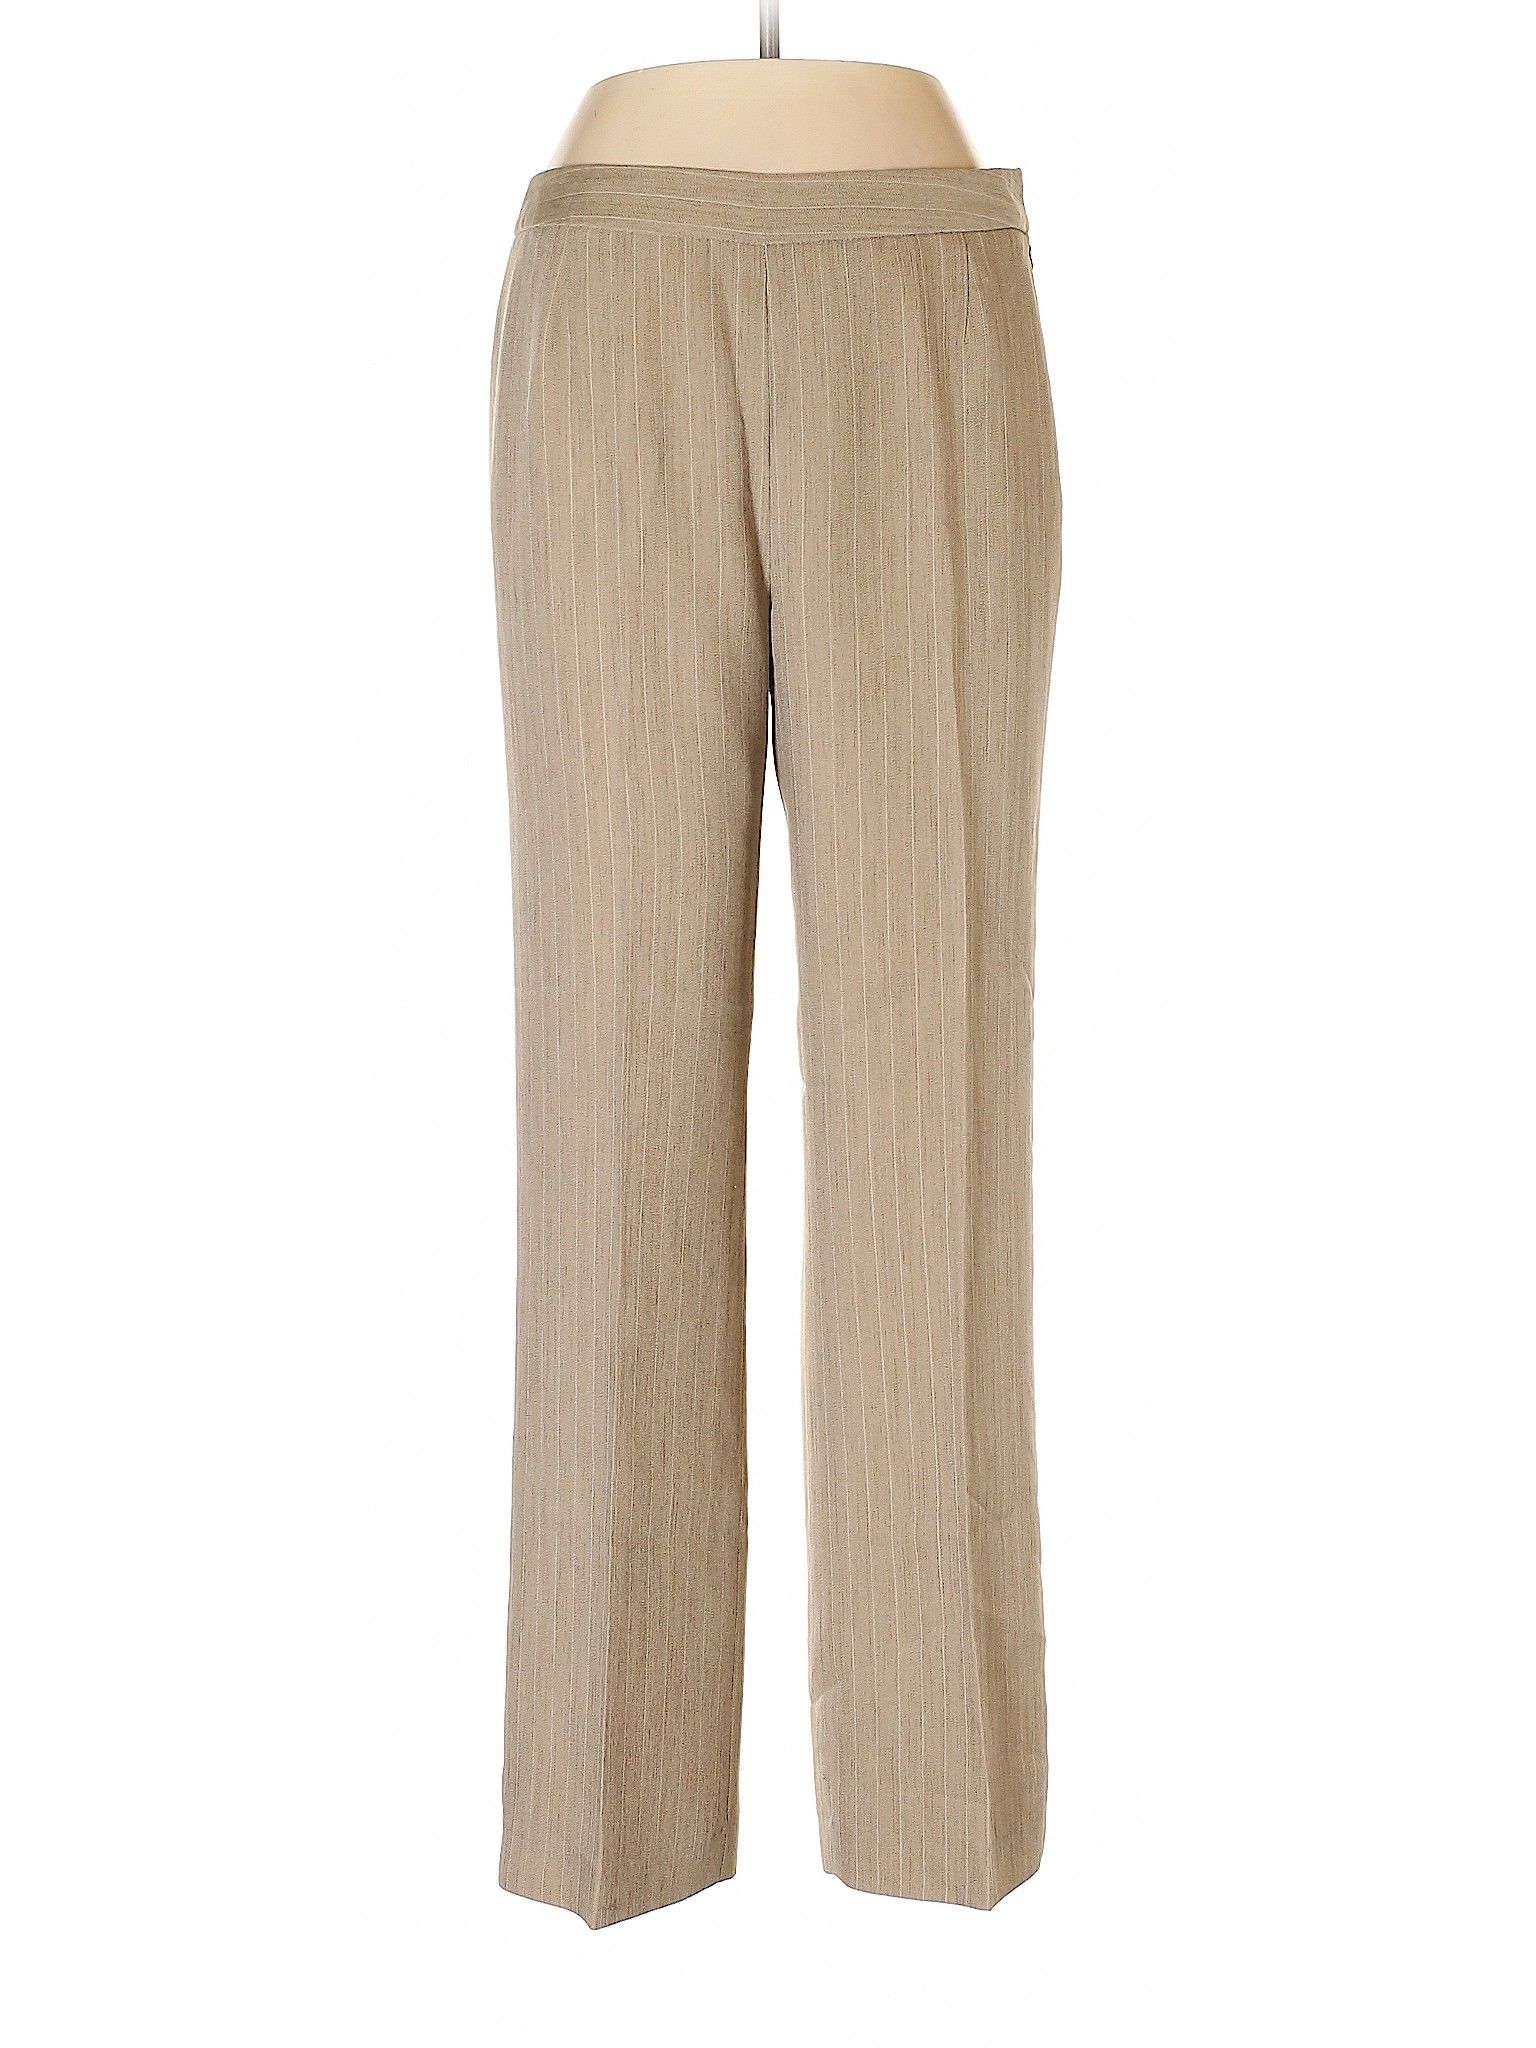 Le Suit Dress Pants Size 6: Beige Women's Bottoms - 55409626 | thredUP